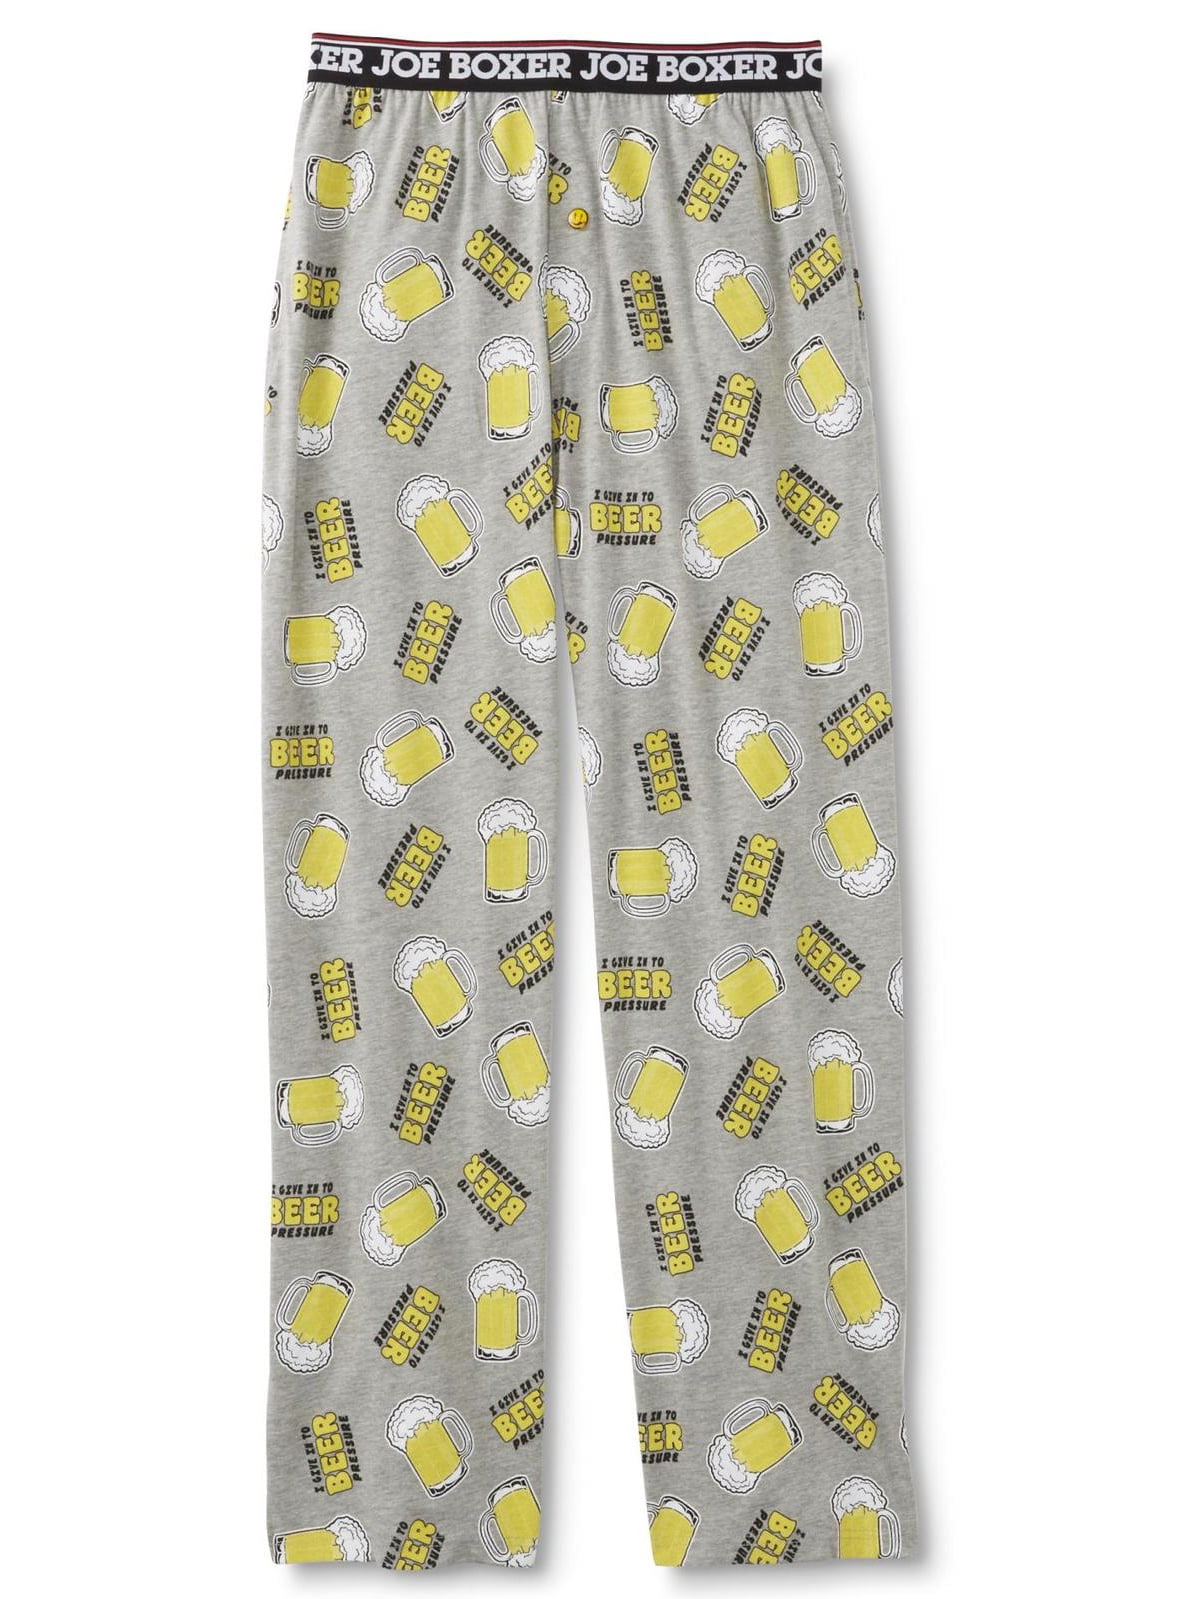 BRAND NEW Joe Boxer Men's Microfleece Pajama Pants 2XL XXL 